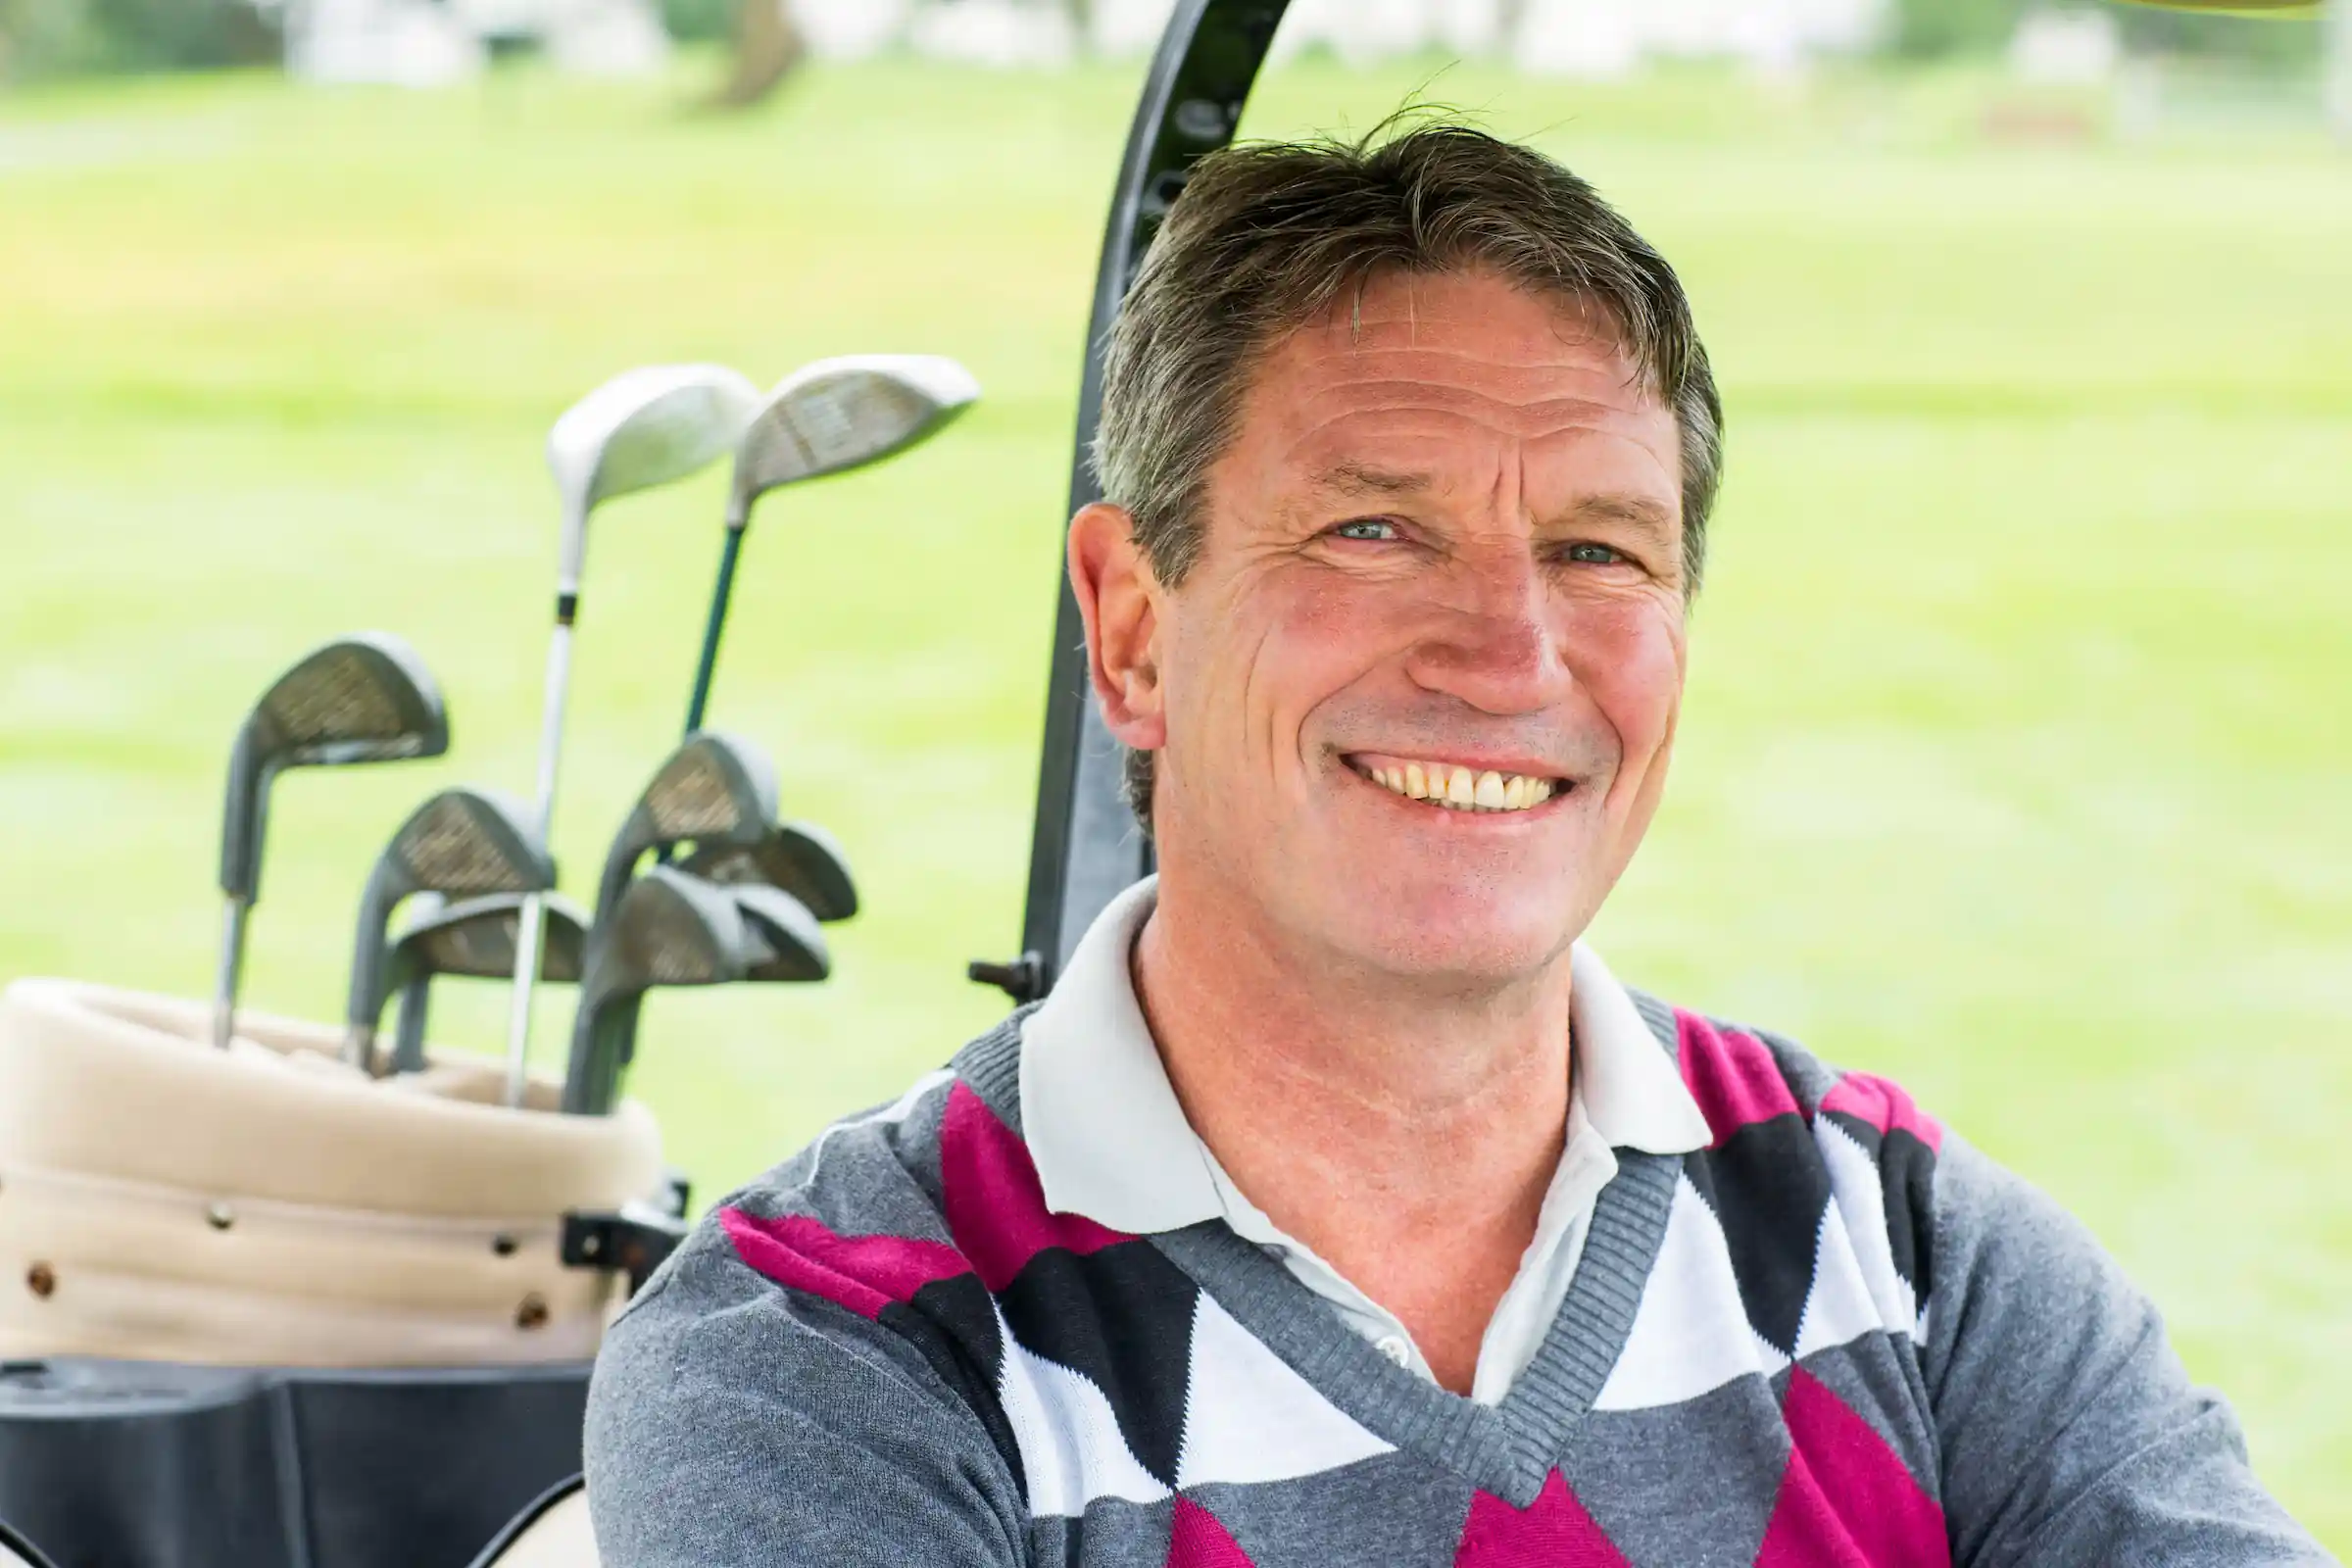 Smiling man in golf cart